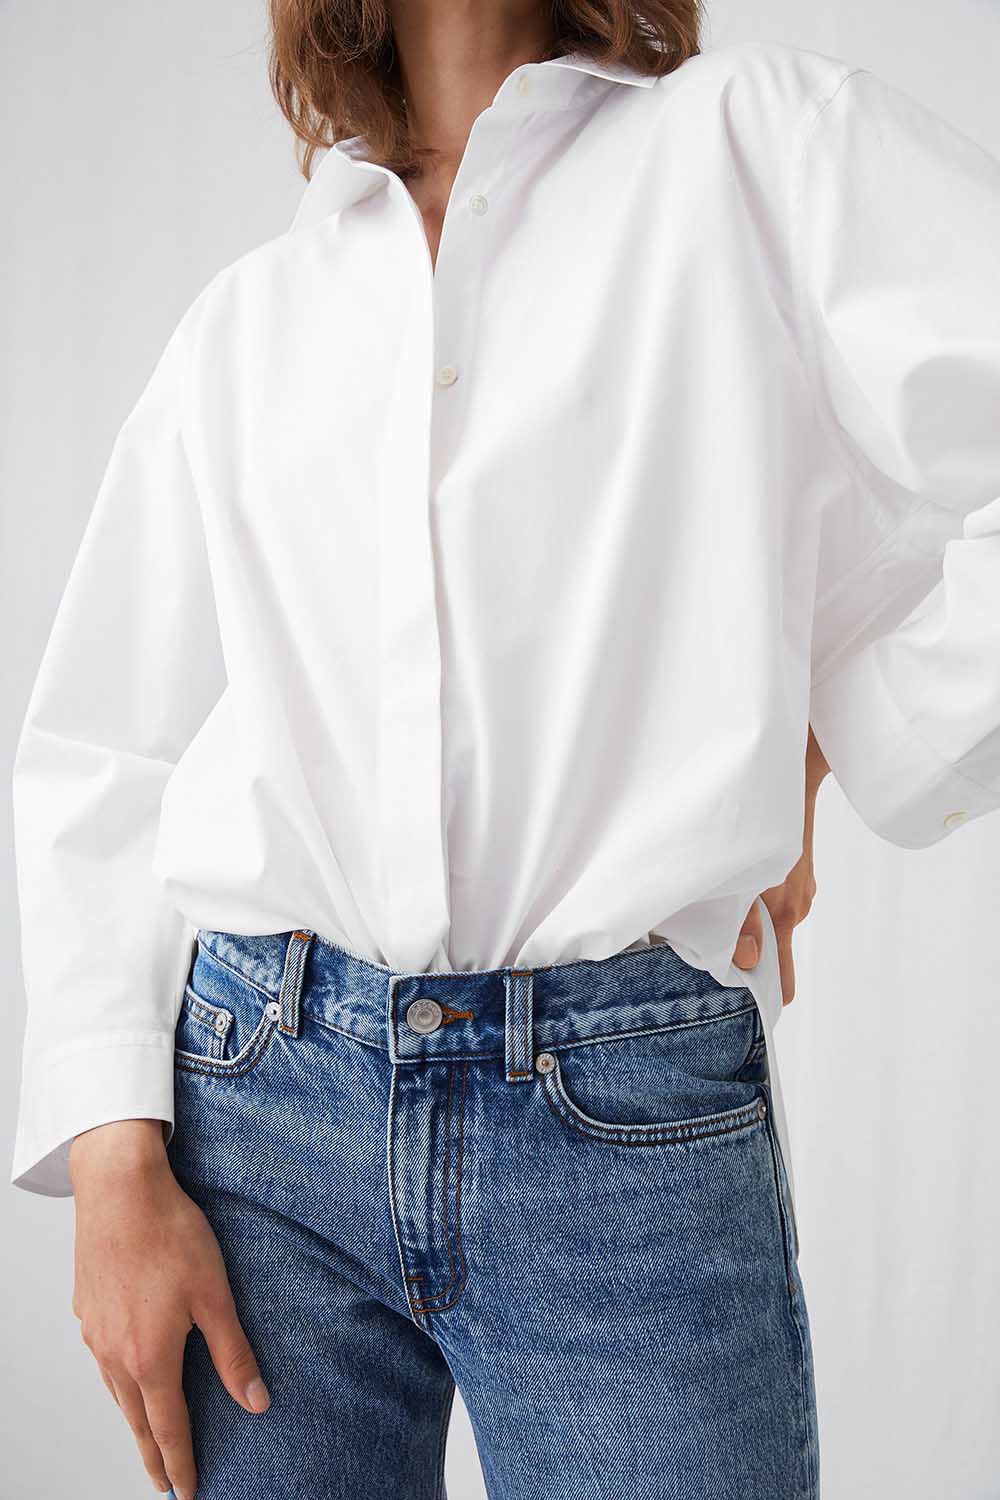 wetgeving Terugspoelen Discriminerend De perfecte witte blouse voor je basisgarderobe - Scandistyle